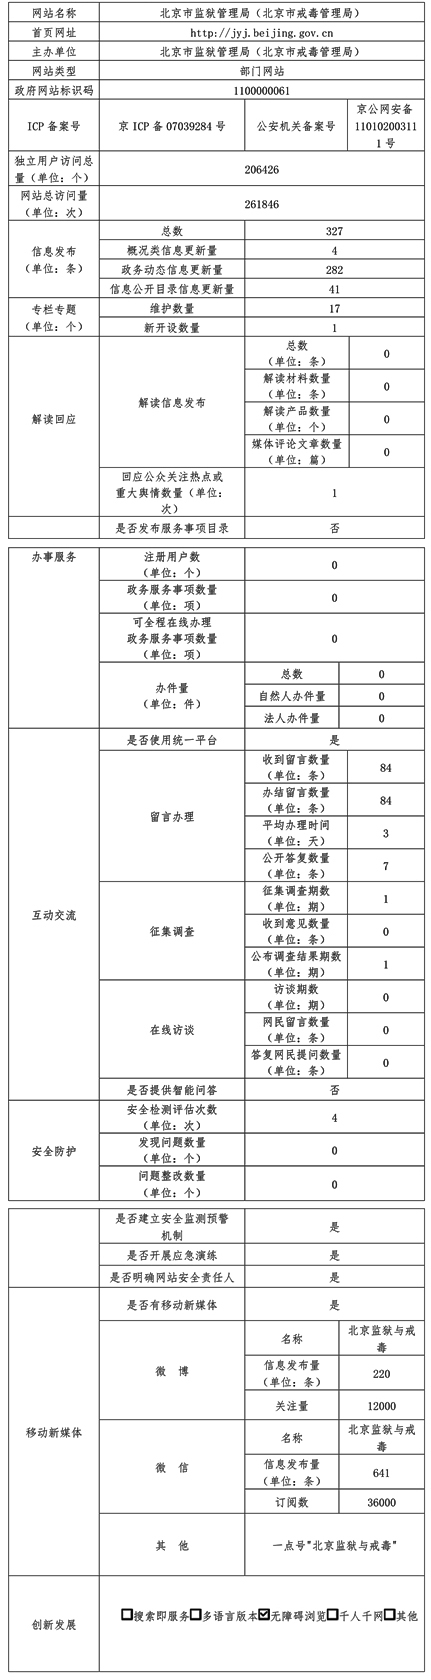 北京市監獄管理局2021年政府網站年度工作報表